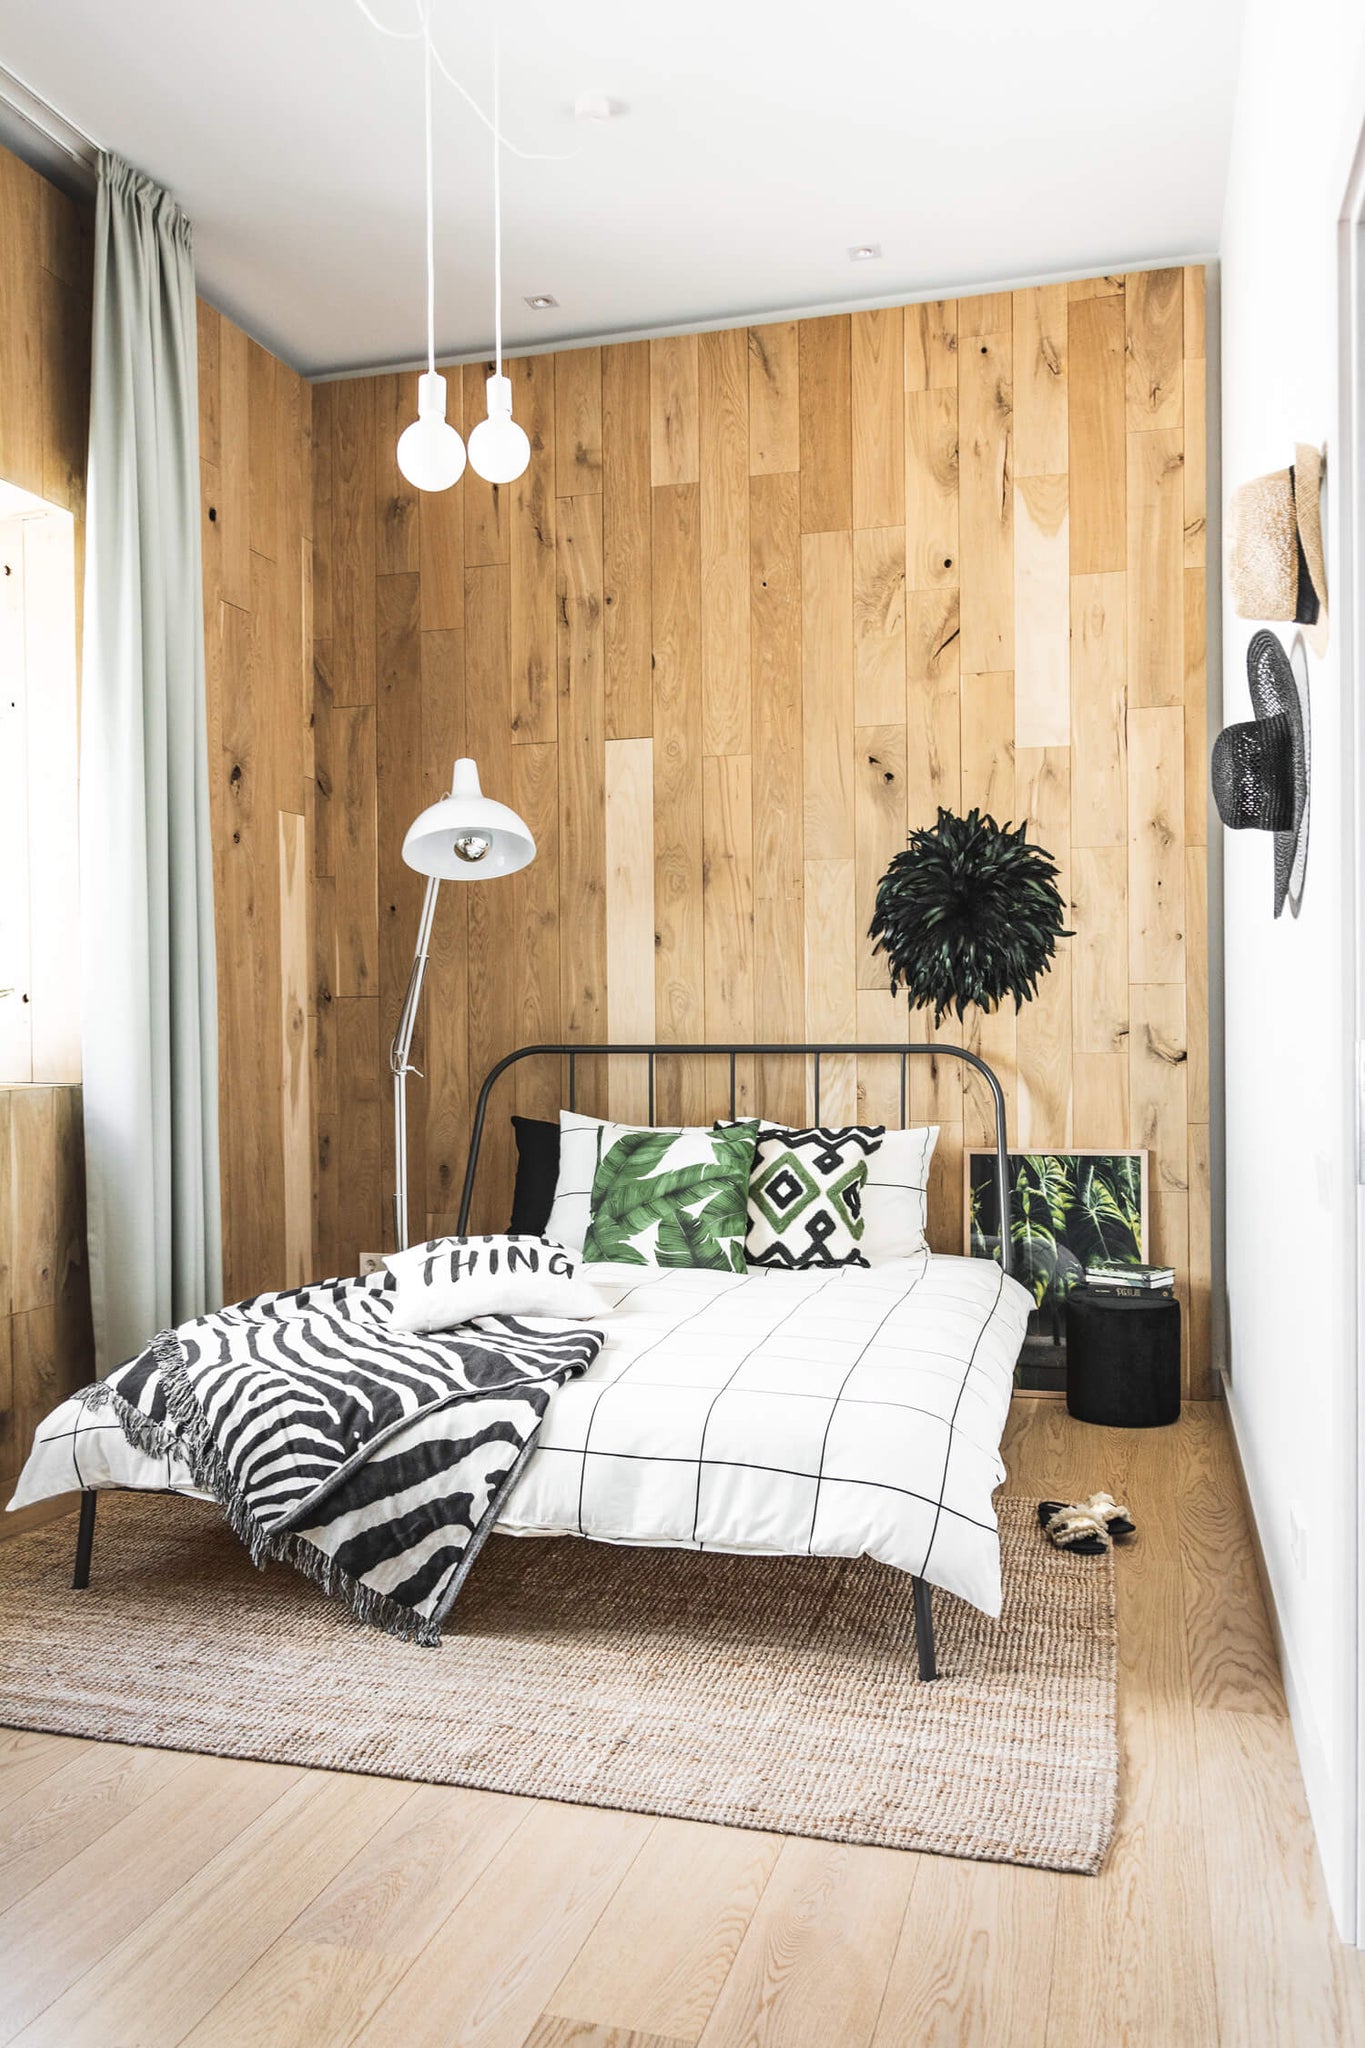 Modern Bohemian Bedroom Reveal | One Room Challenge 2019 - Week 6